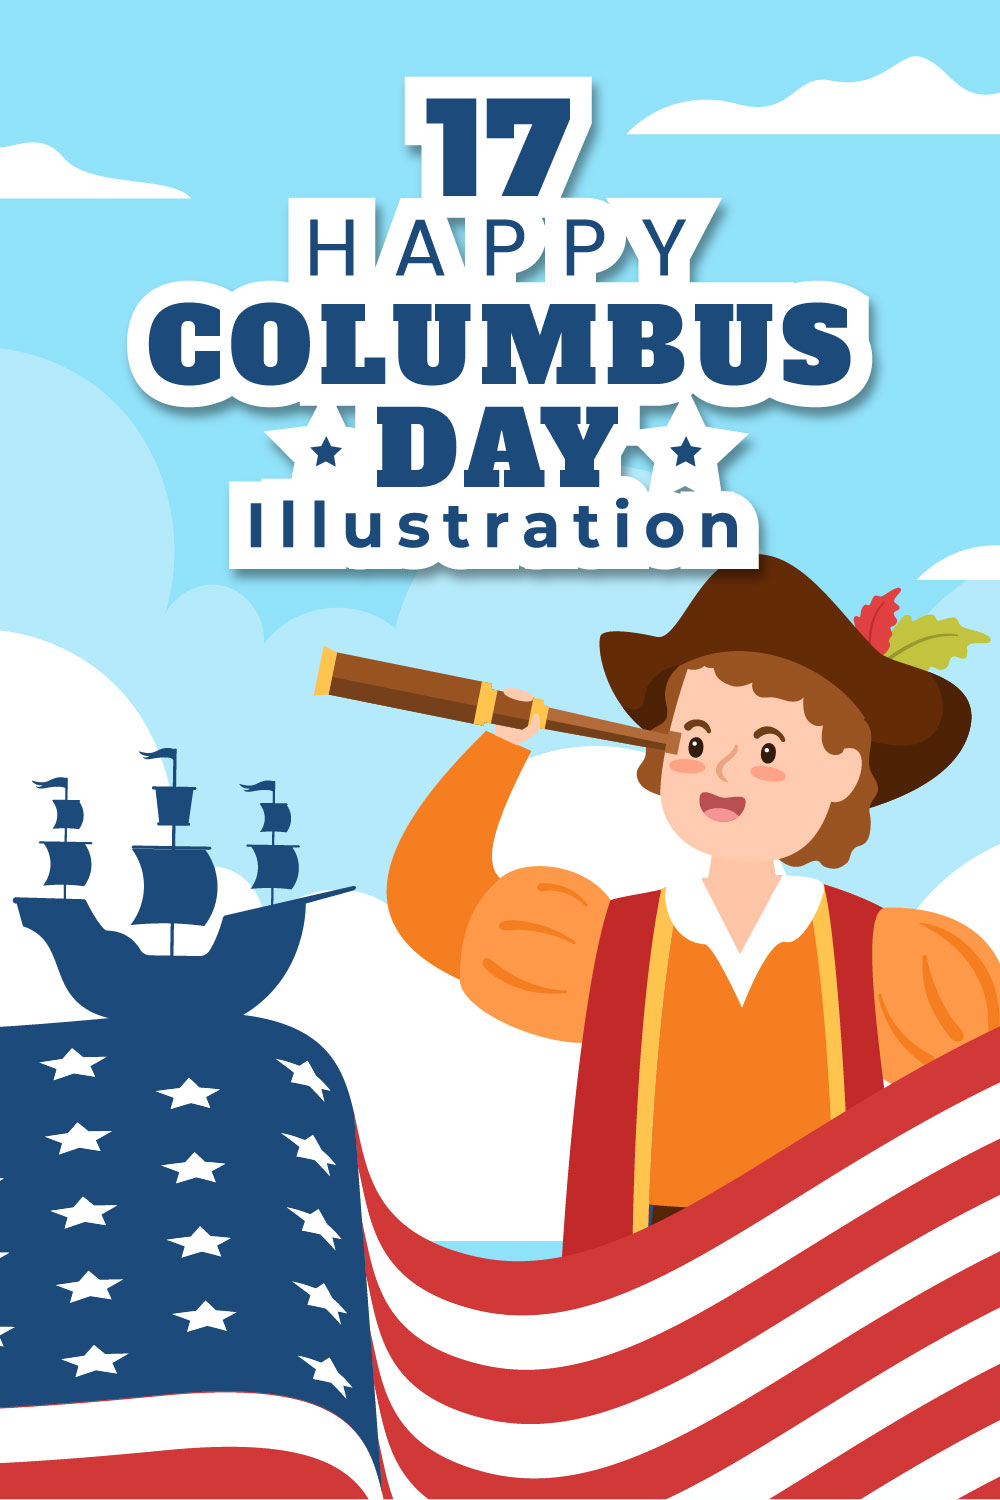 17 Happy Columbus Day National Holiday Illustration pinterest image.